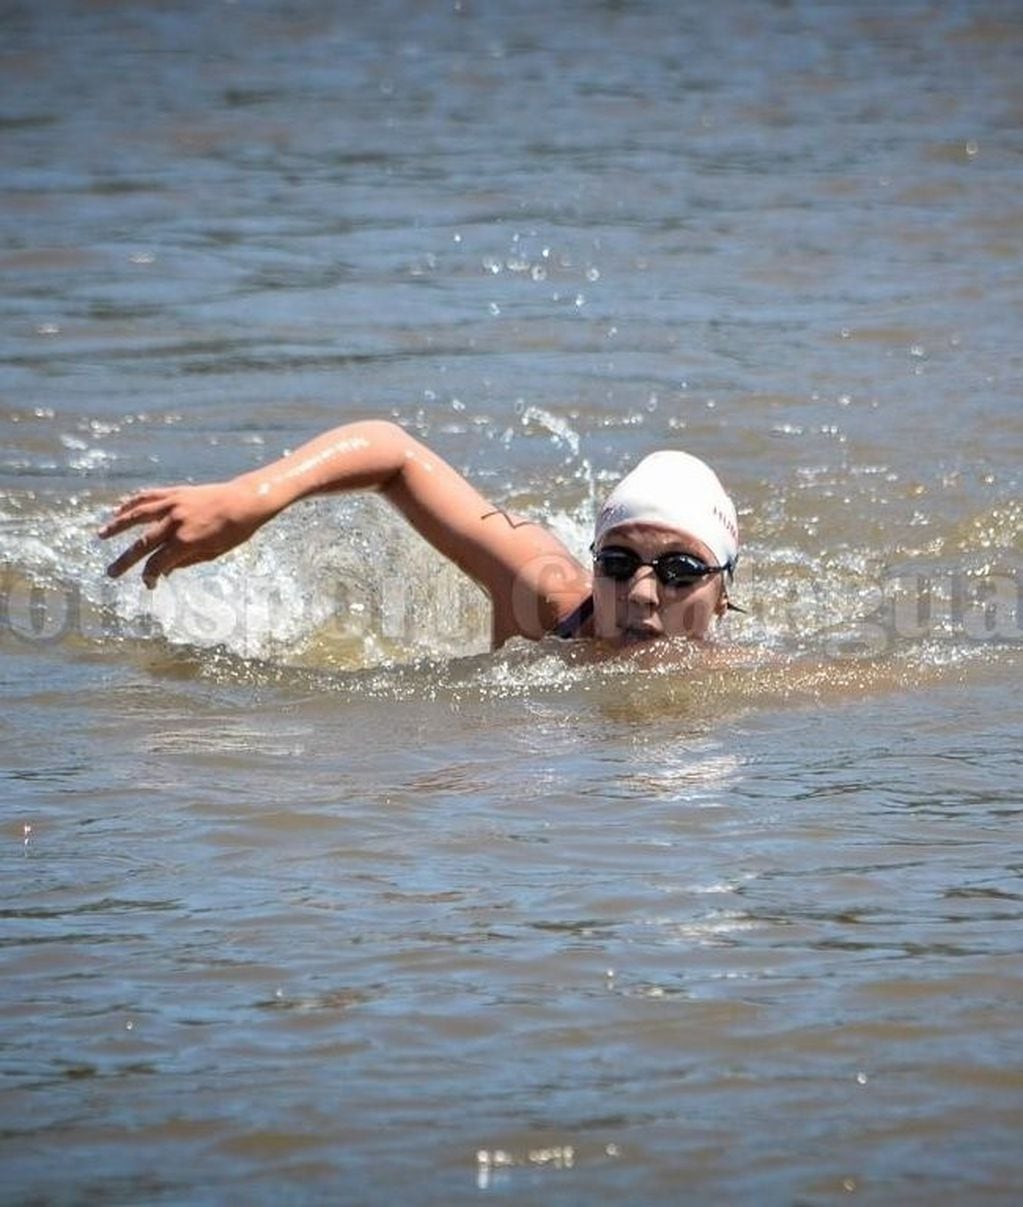 nadador
Credito: maratonacuaticagchu.com.ar